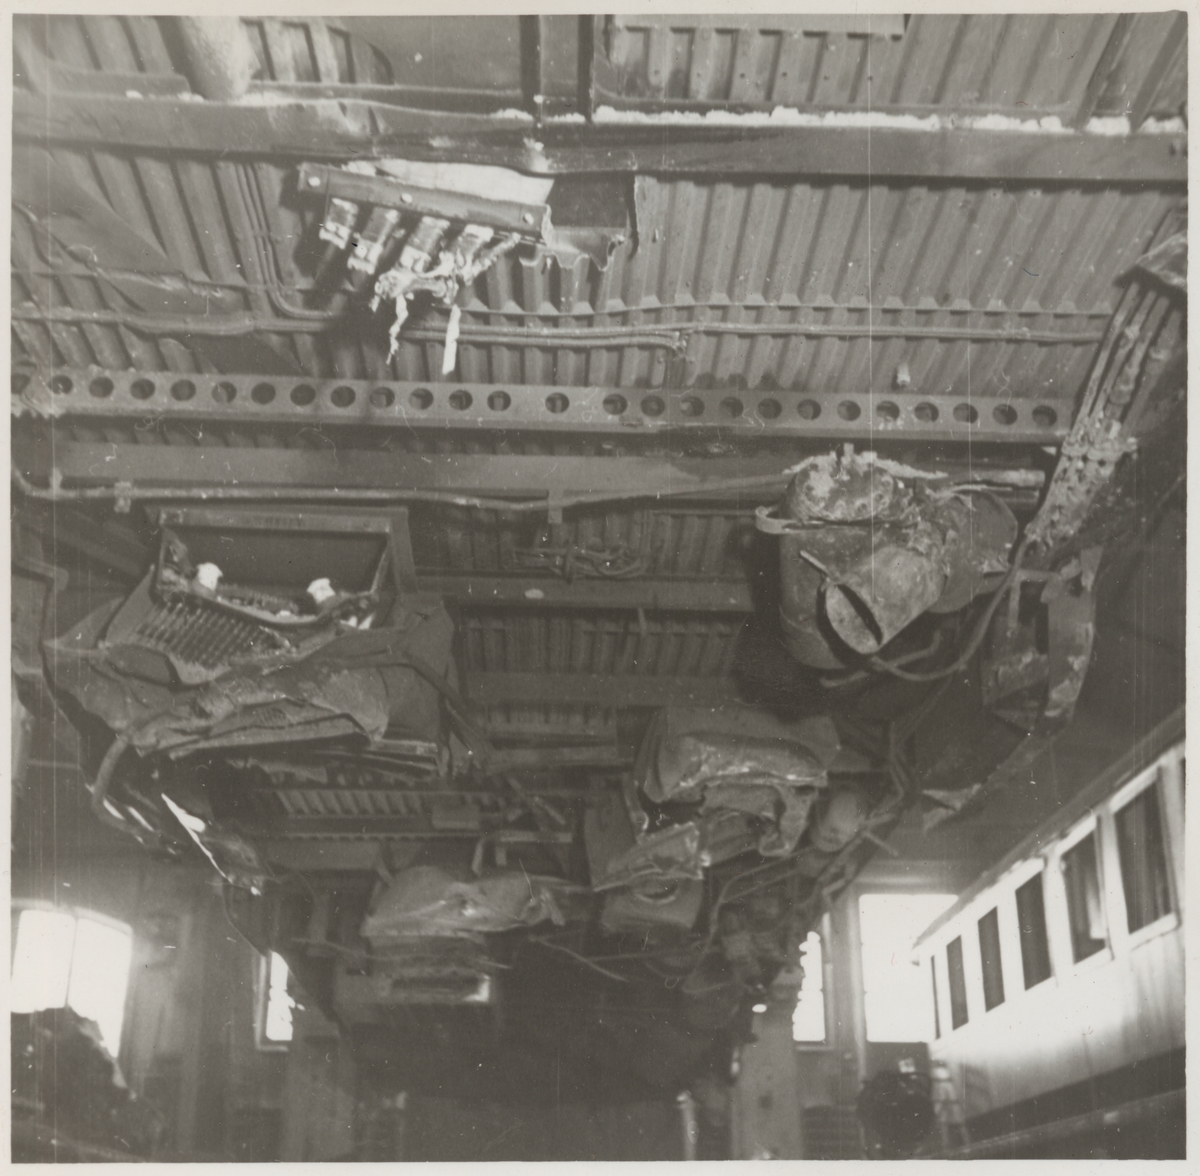 Skador i underredet på A-vagnen efter olycka vid hållplatsen Arket 1951.